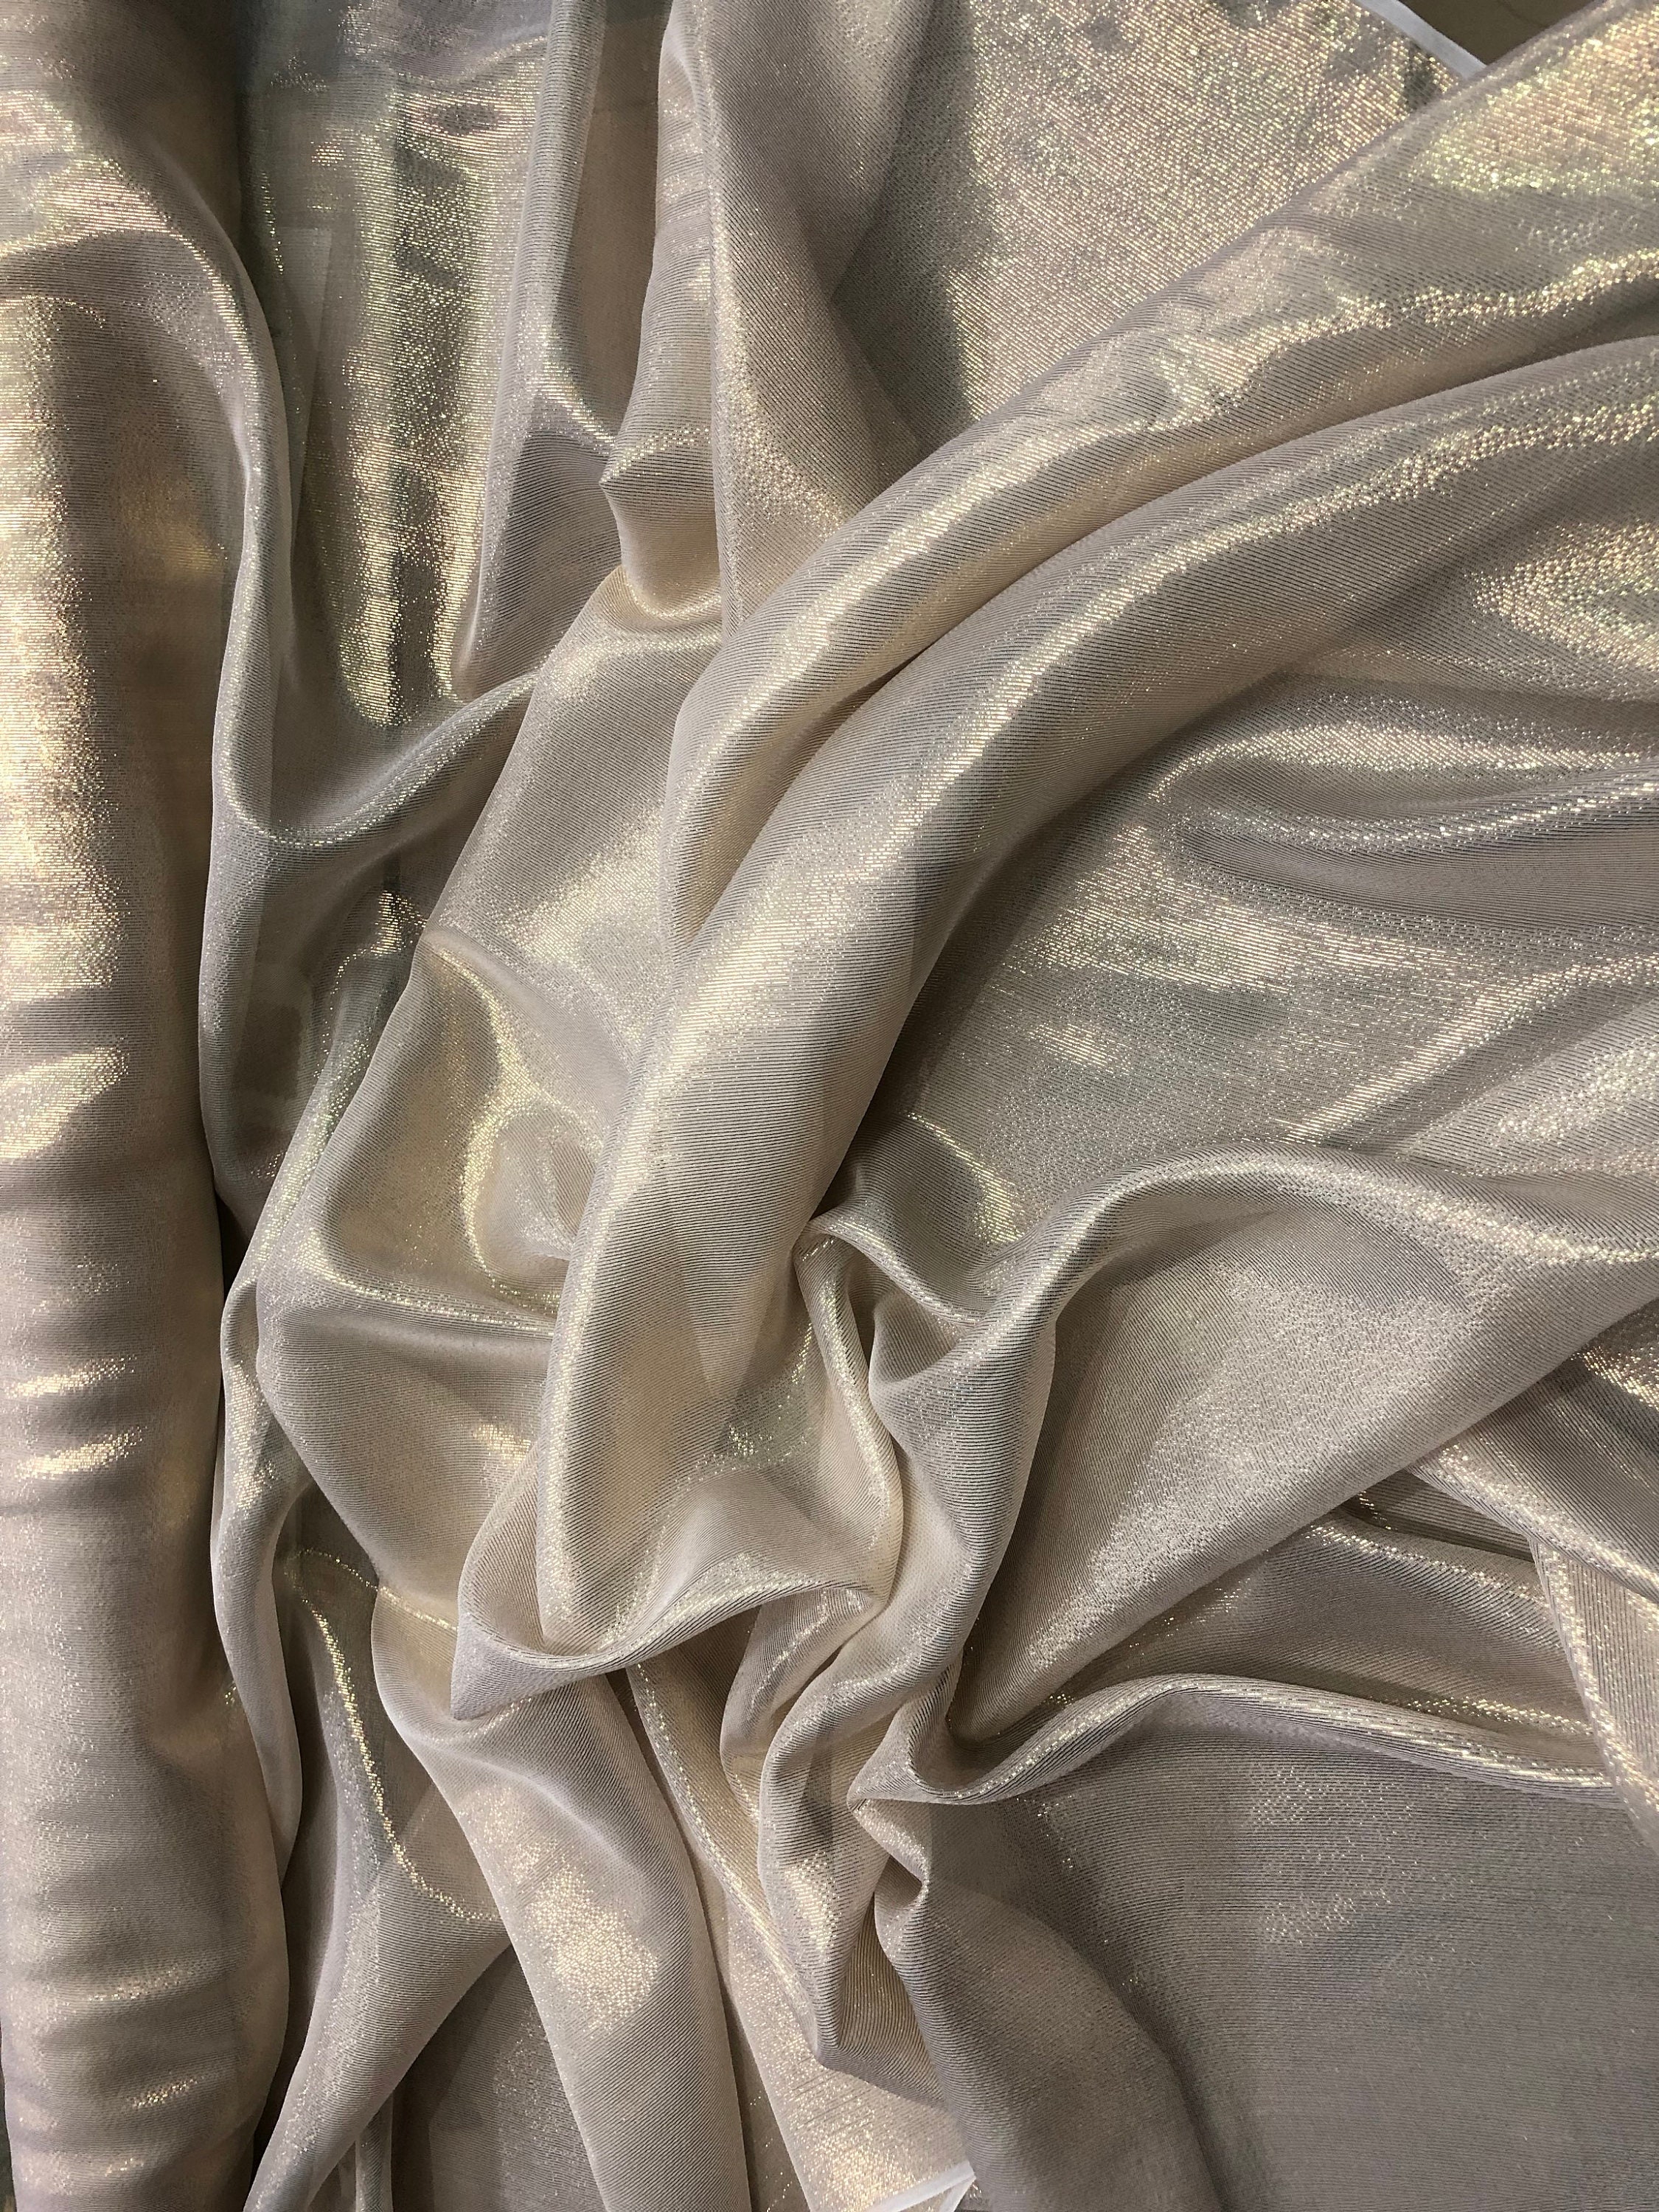 Silk chiffon 54 wide Matalic gold pinstripe silk chiffon fabric sold by ...